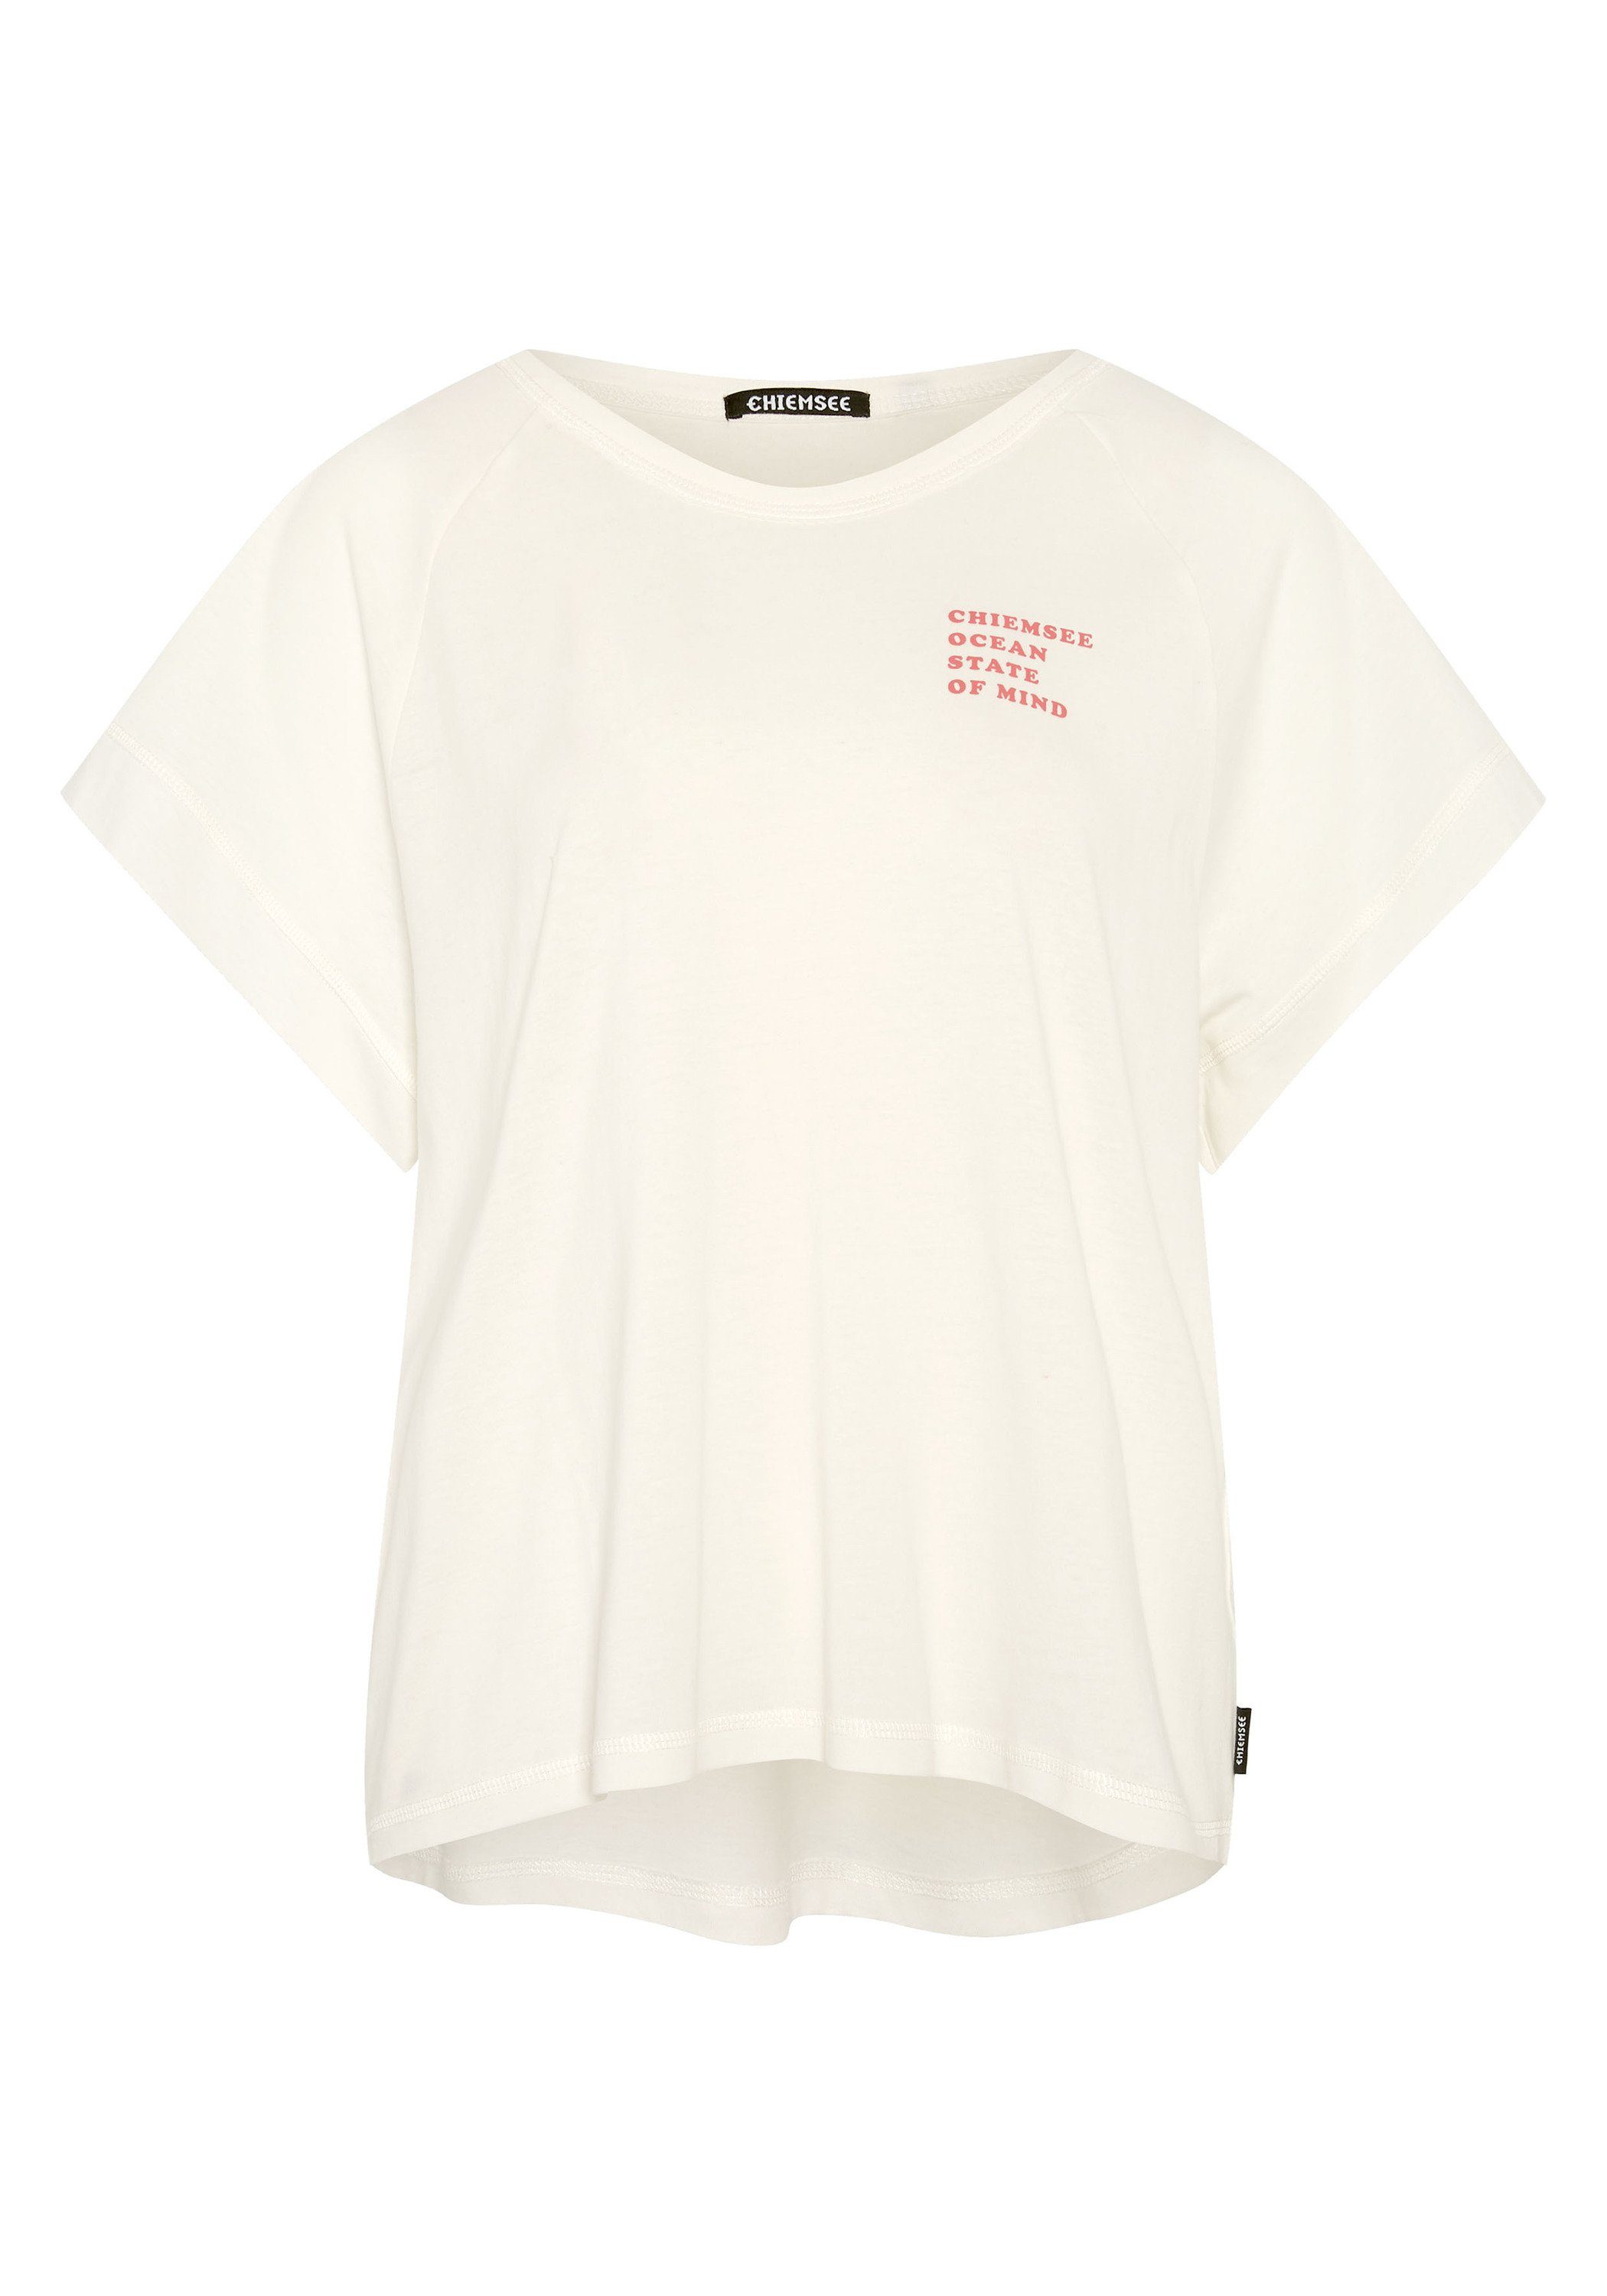 Chiemsee Print-Shirt Shirt in Vintage-Optik 1 11-4202 Star White